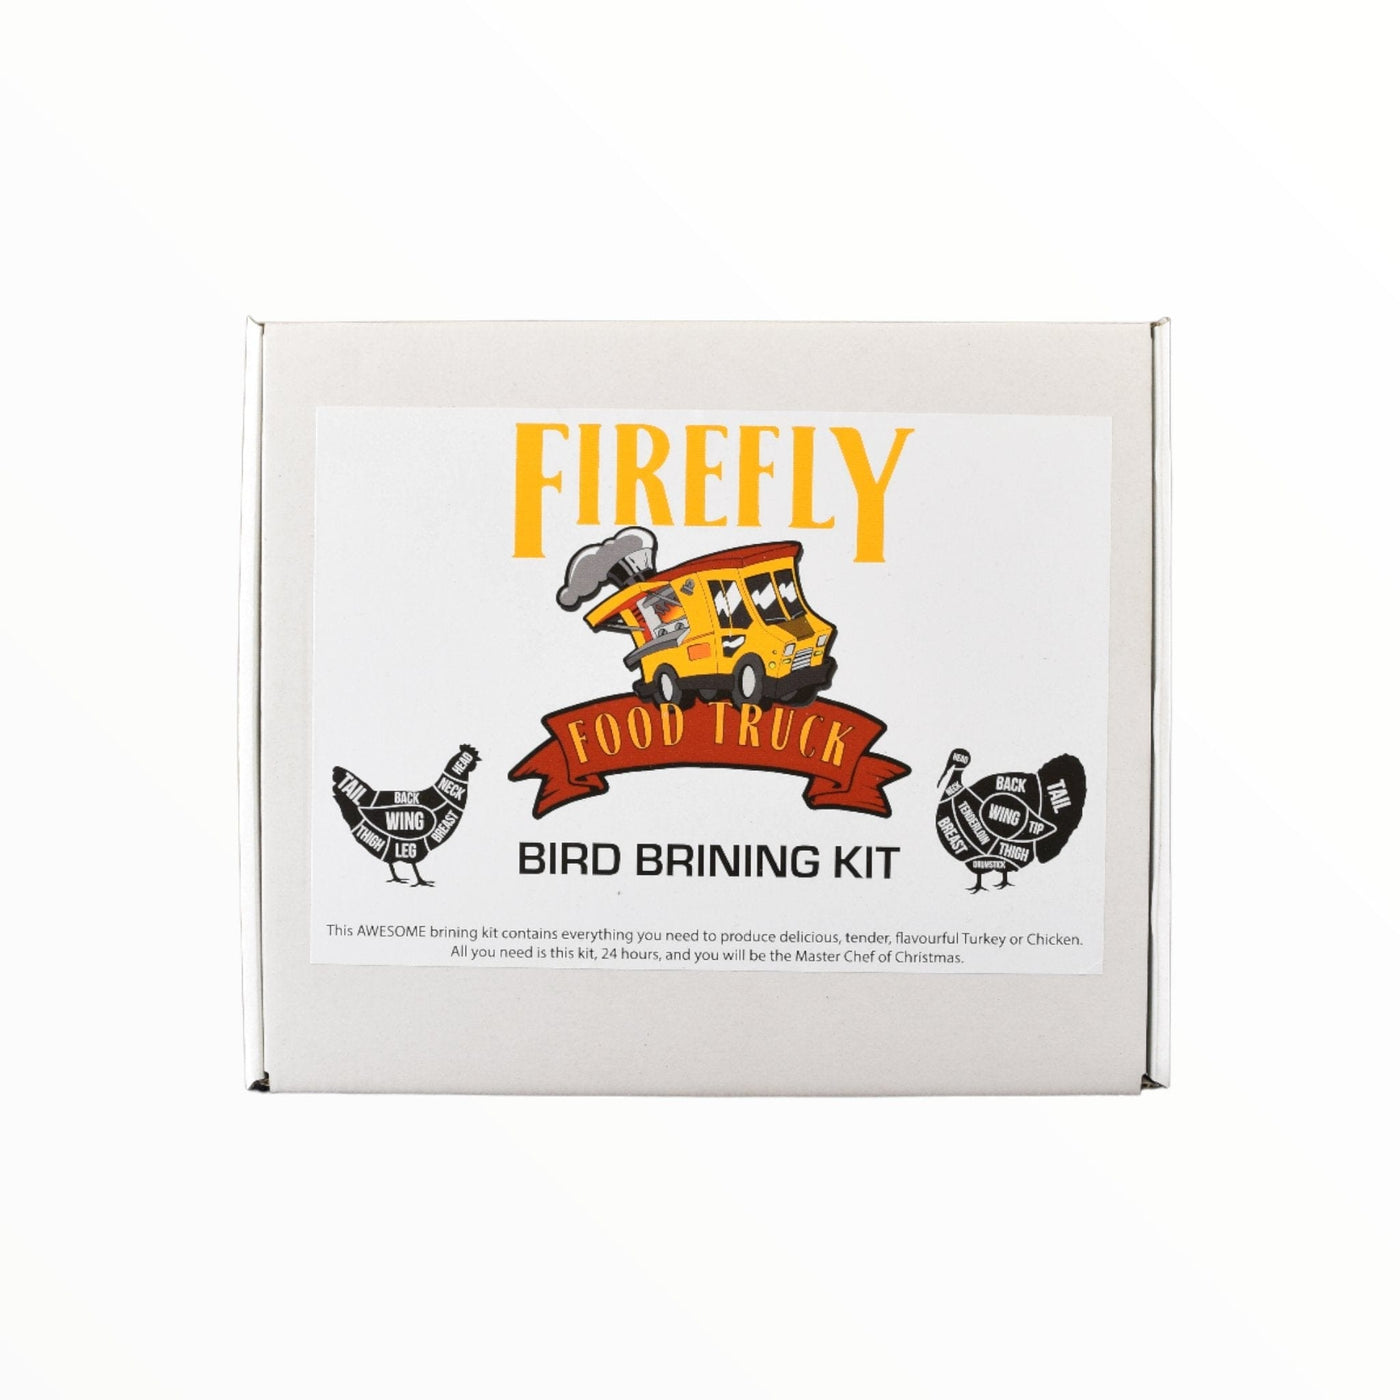 Bird Brining Kit